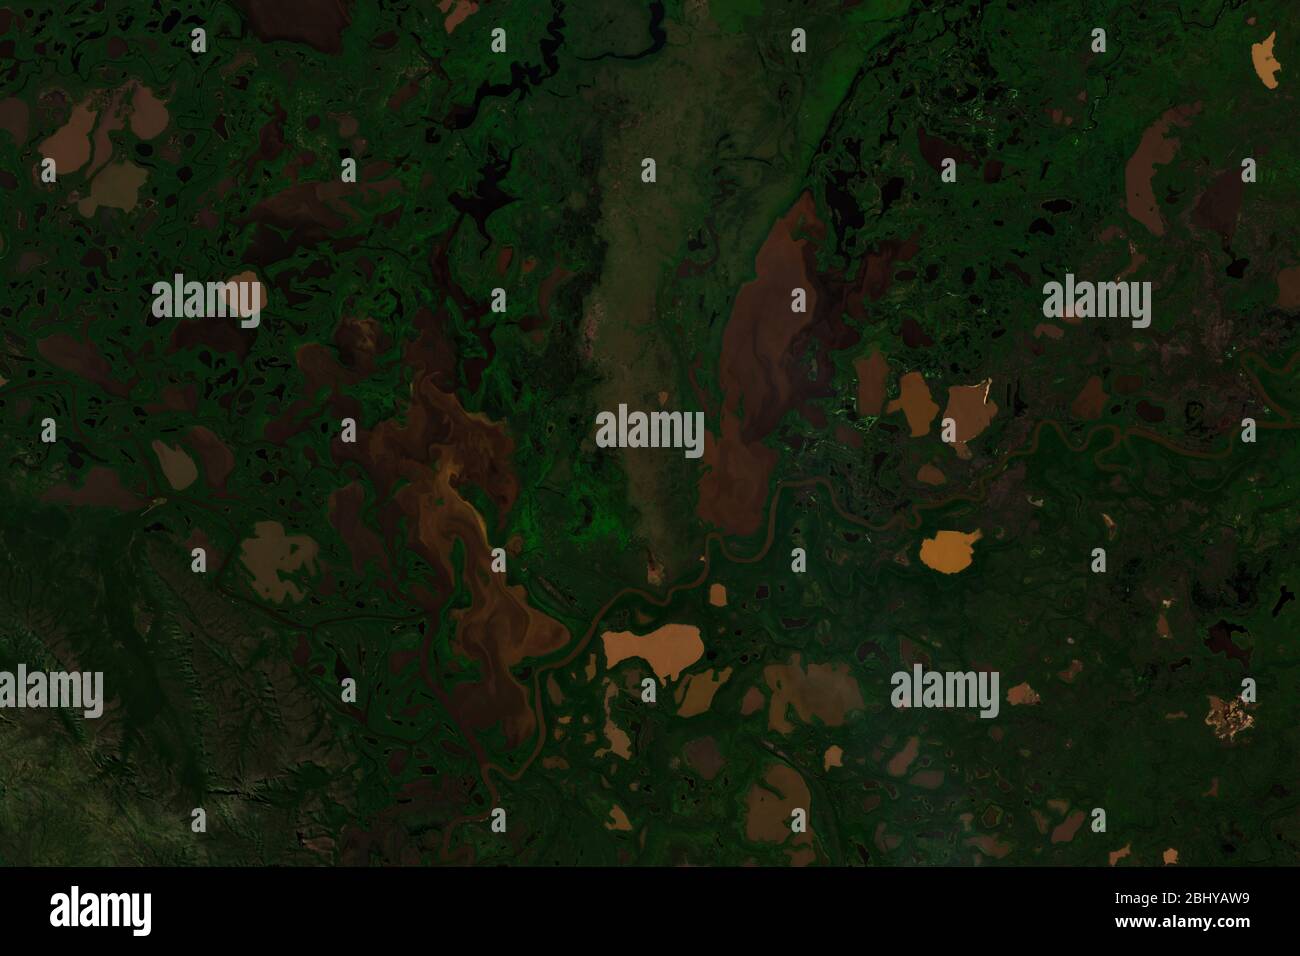 Immagine satellitare ad alta risoluzione delle zone umide del Parco Nazionale di Pantanal Matogrossense - contiene dati Copernicus Sentinel modificati (2020) Foto Stock